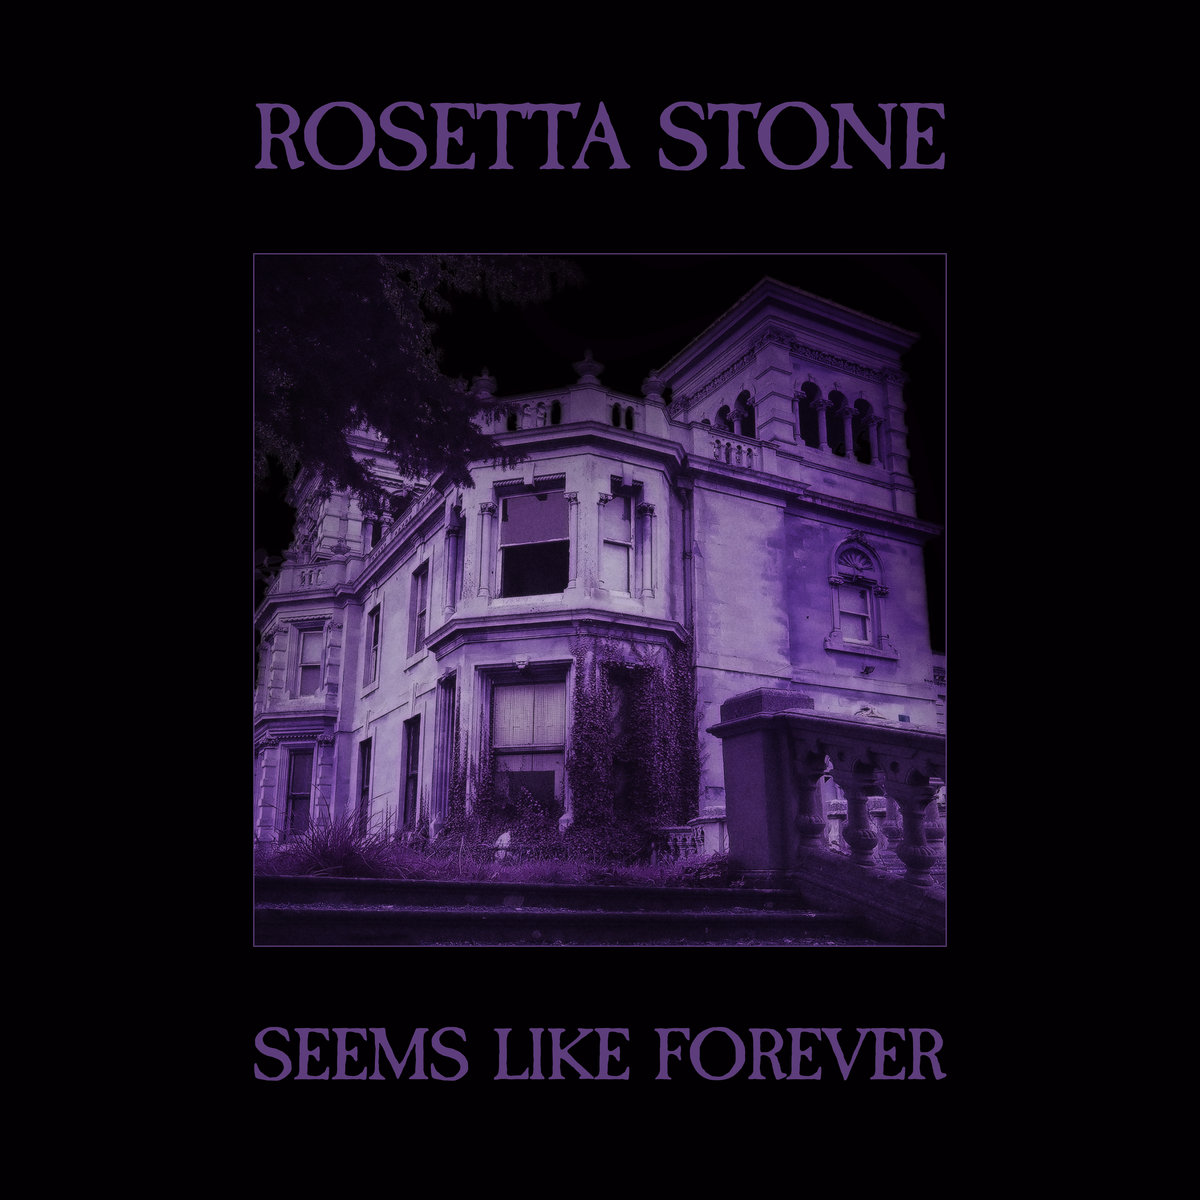 Rosetta Stone, “Seems Like Forever”